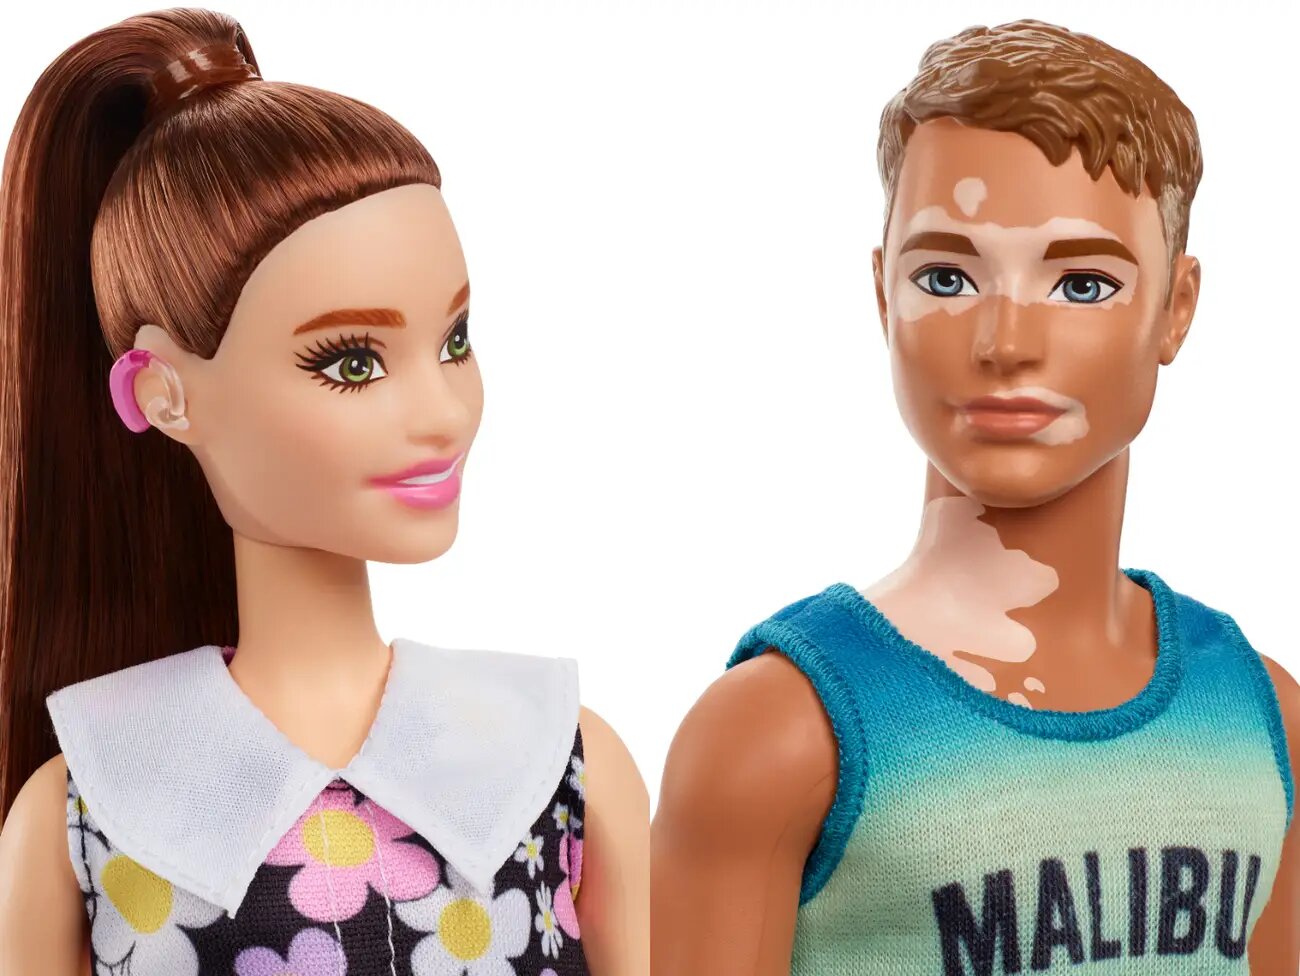 compuesto Egipto estoy de acuerdo Barbie ahora tiene audífonos, prótesis, silla de ruedas o vitíligo |  Business Insider España